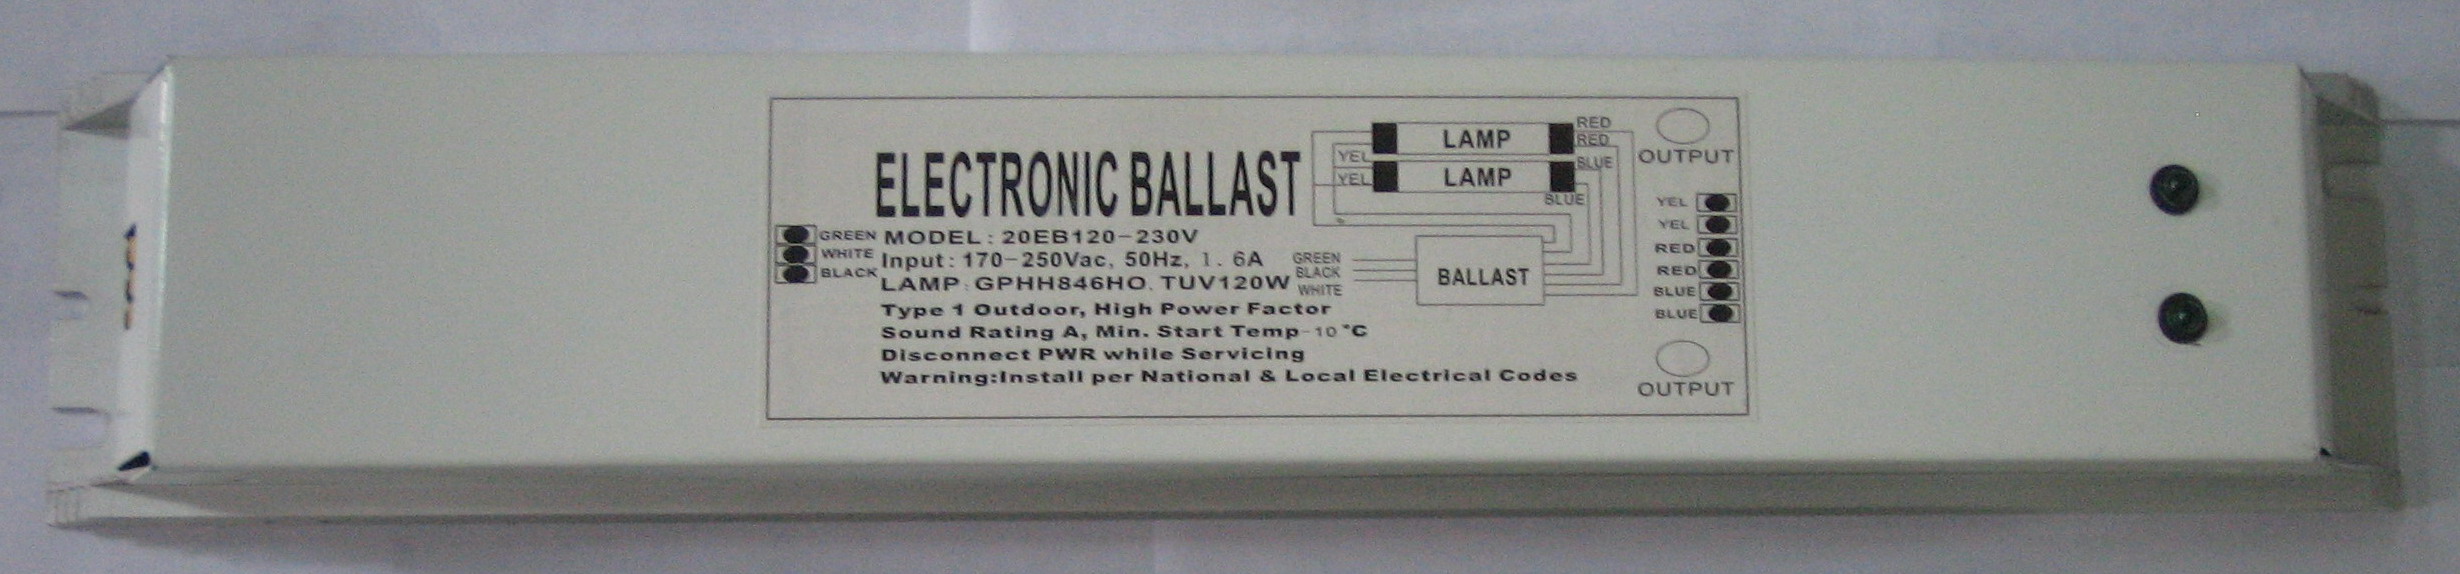 ballast for uv lamp 150w